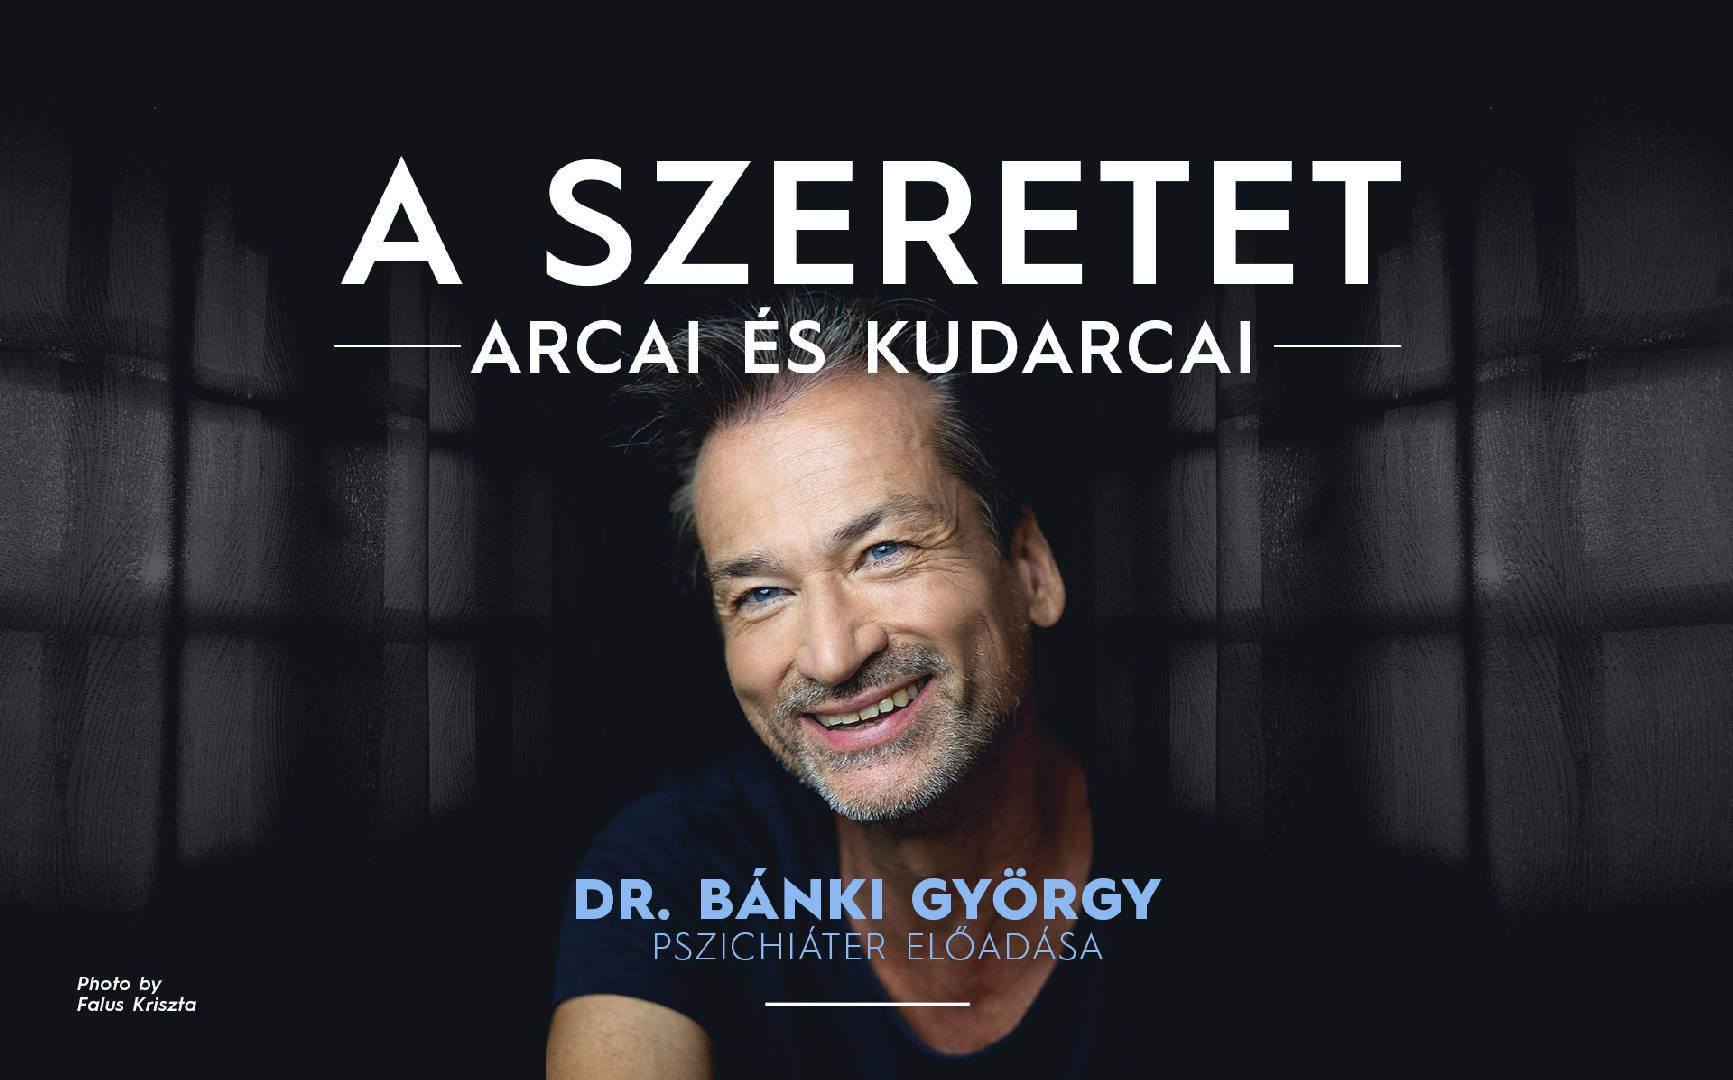 A szeretet arcai és kudarcai - TAPOLCA - Dr. Bánki György pszichiáter előadása